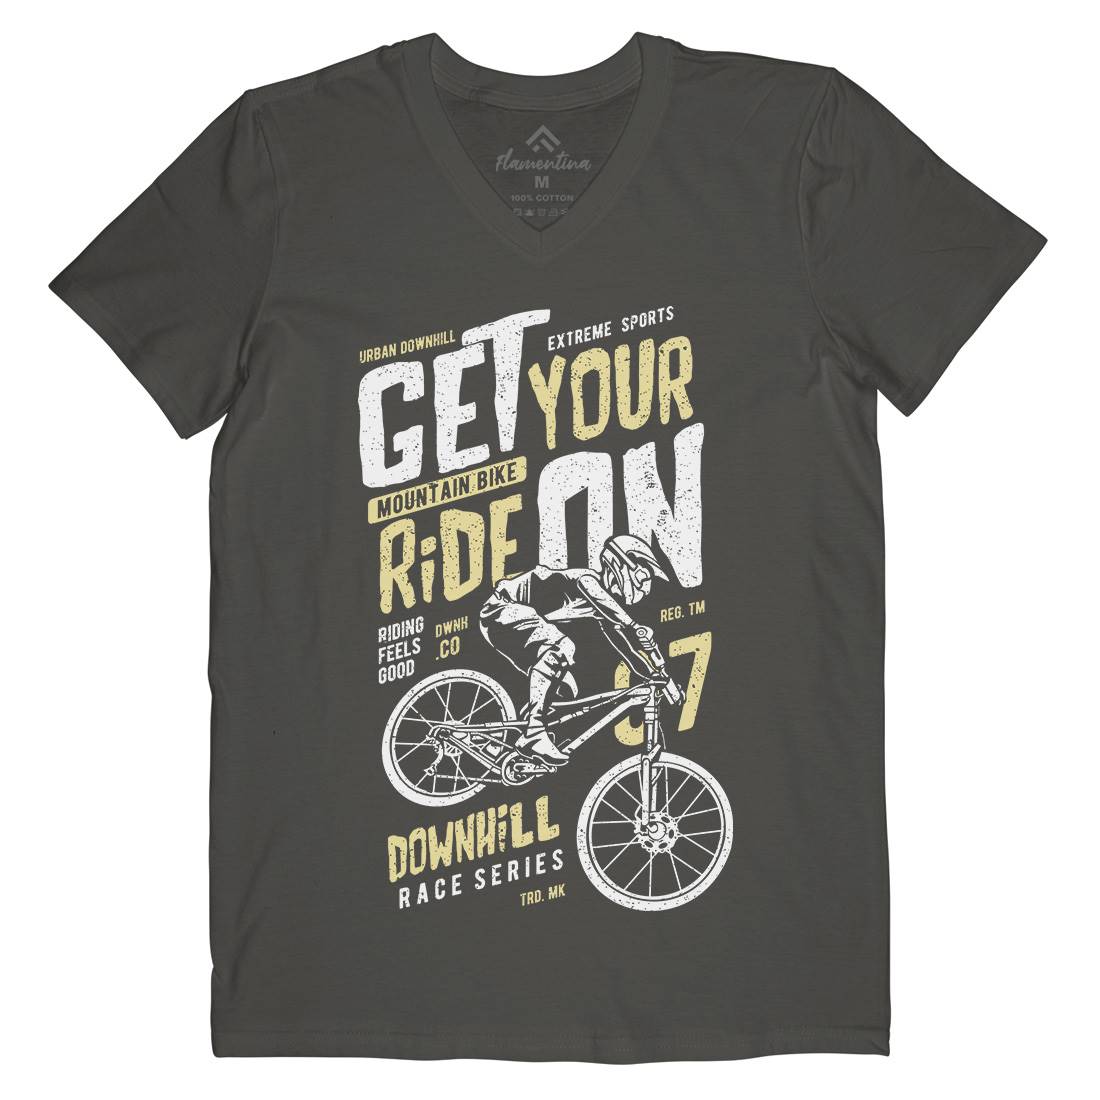 Get Your Ride Mens V-Neck T-Shirt Bikes A673